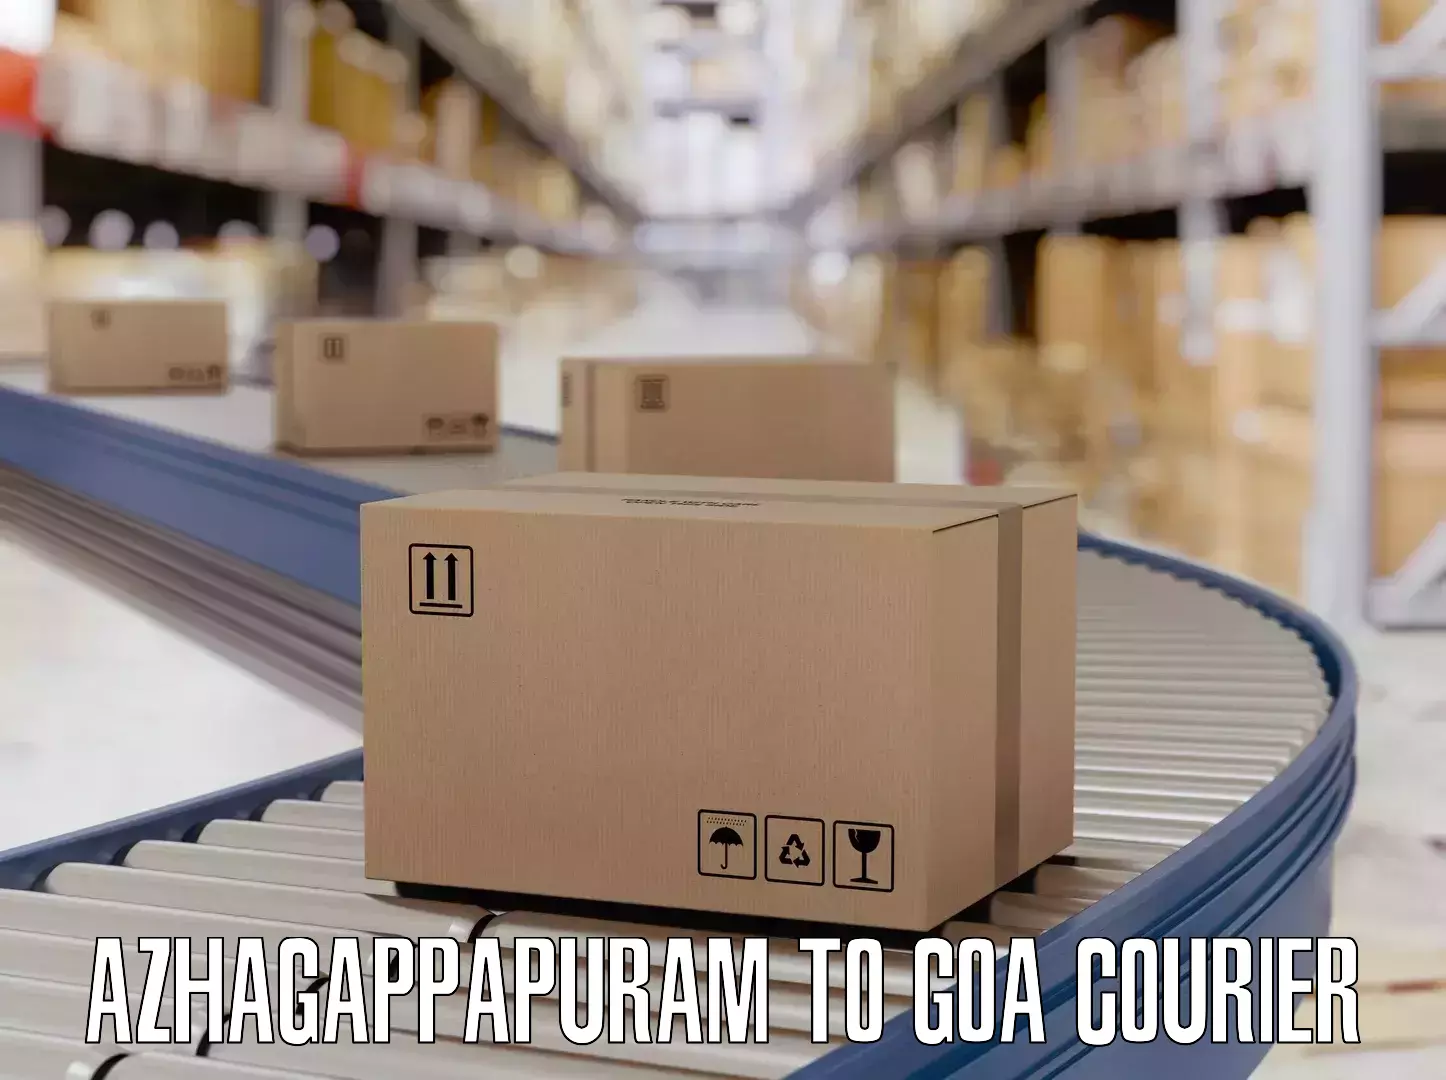 Quick luggage shipment in Azhagappapuram to IIT Goa